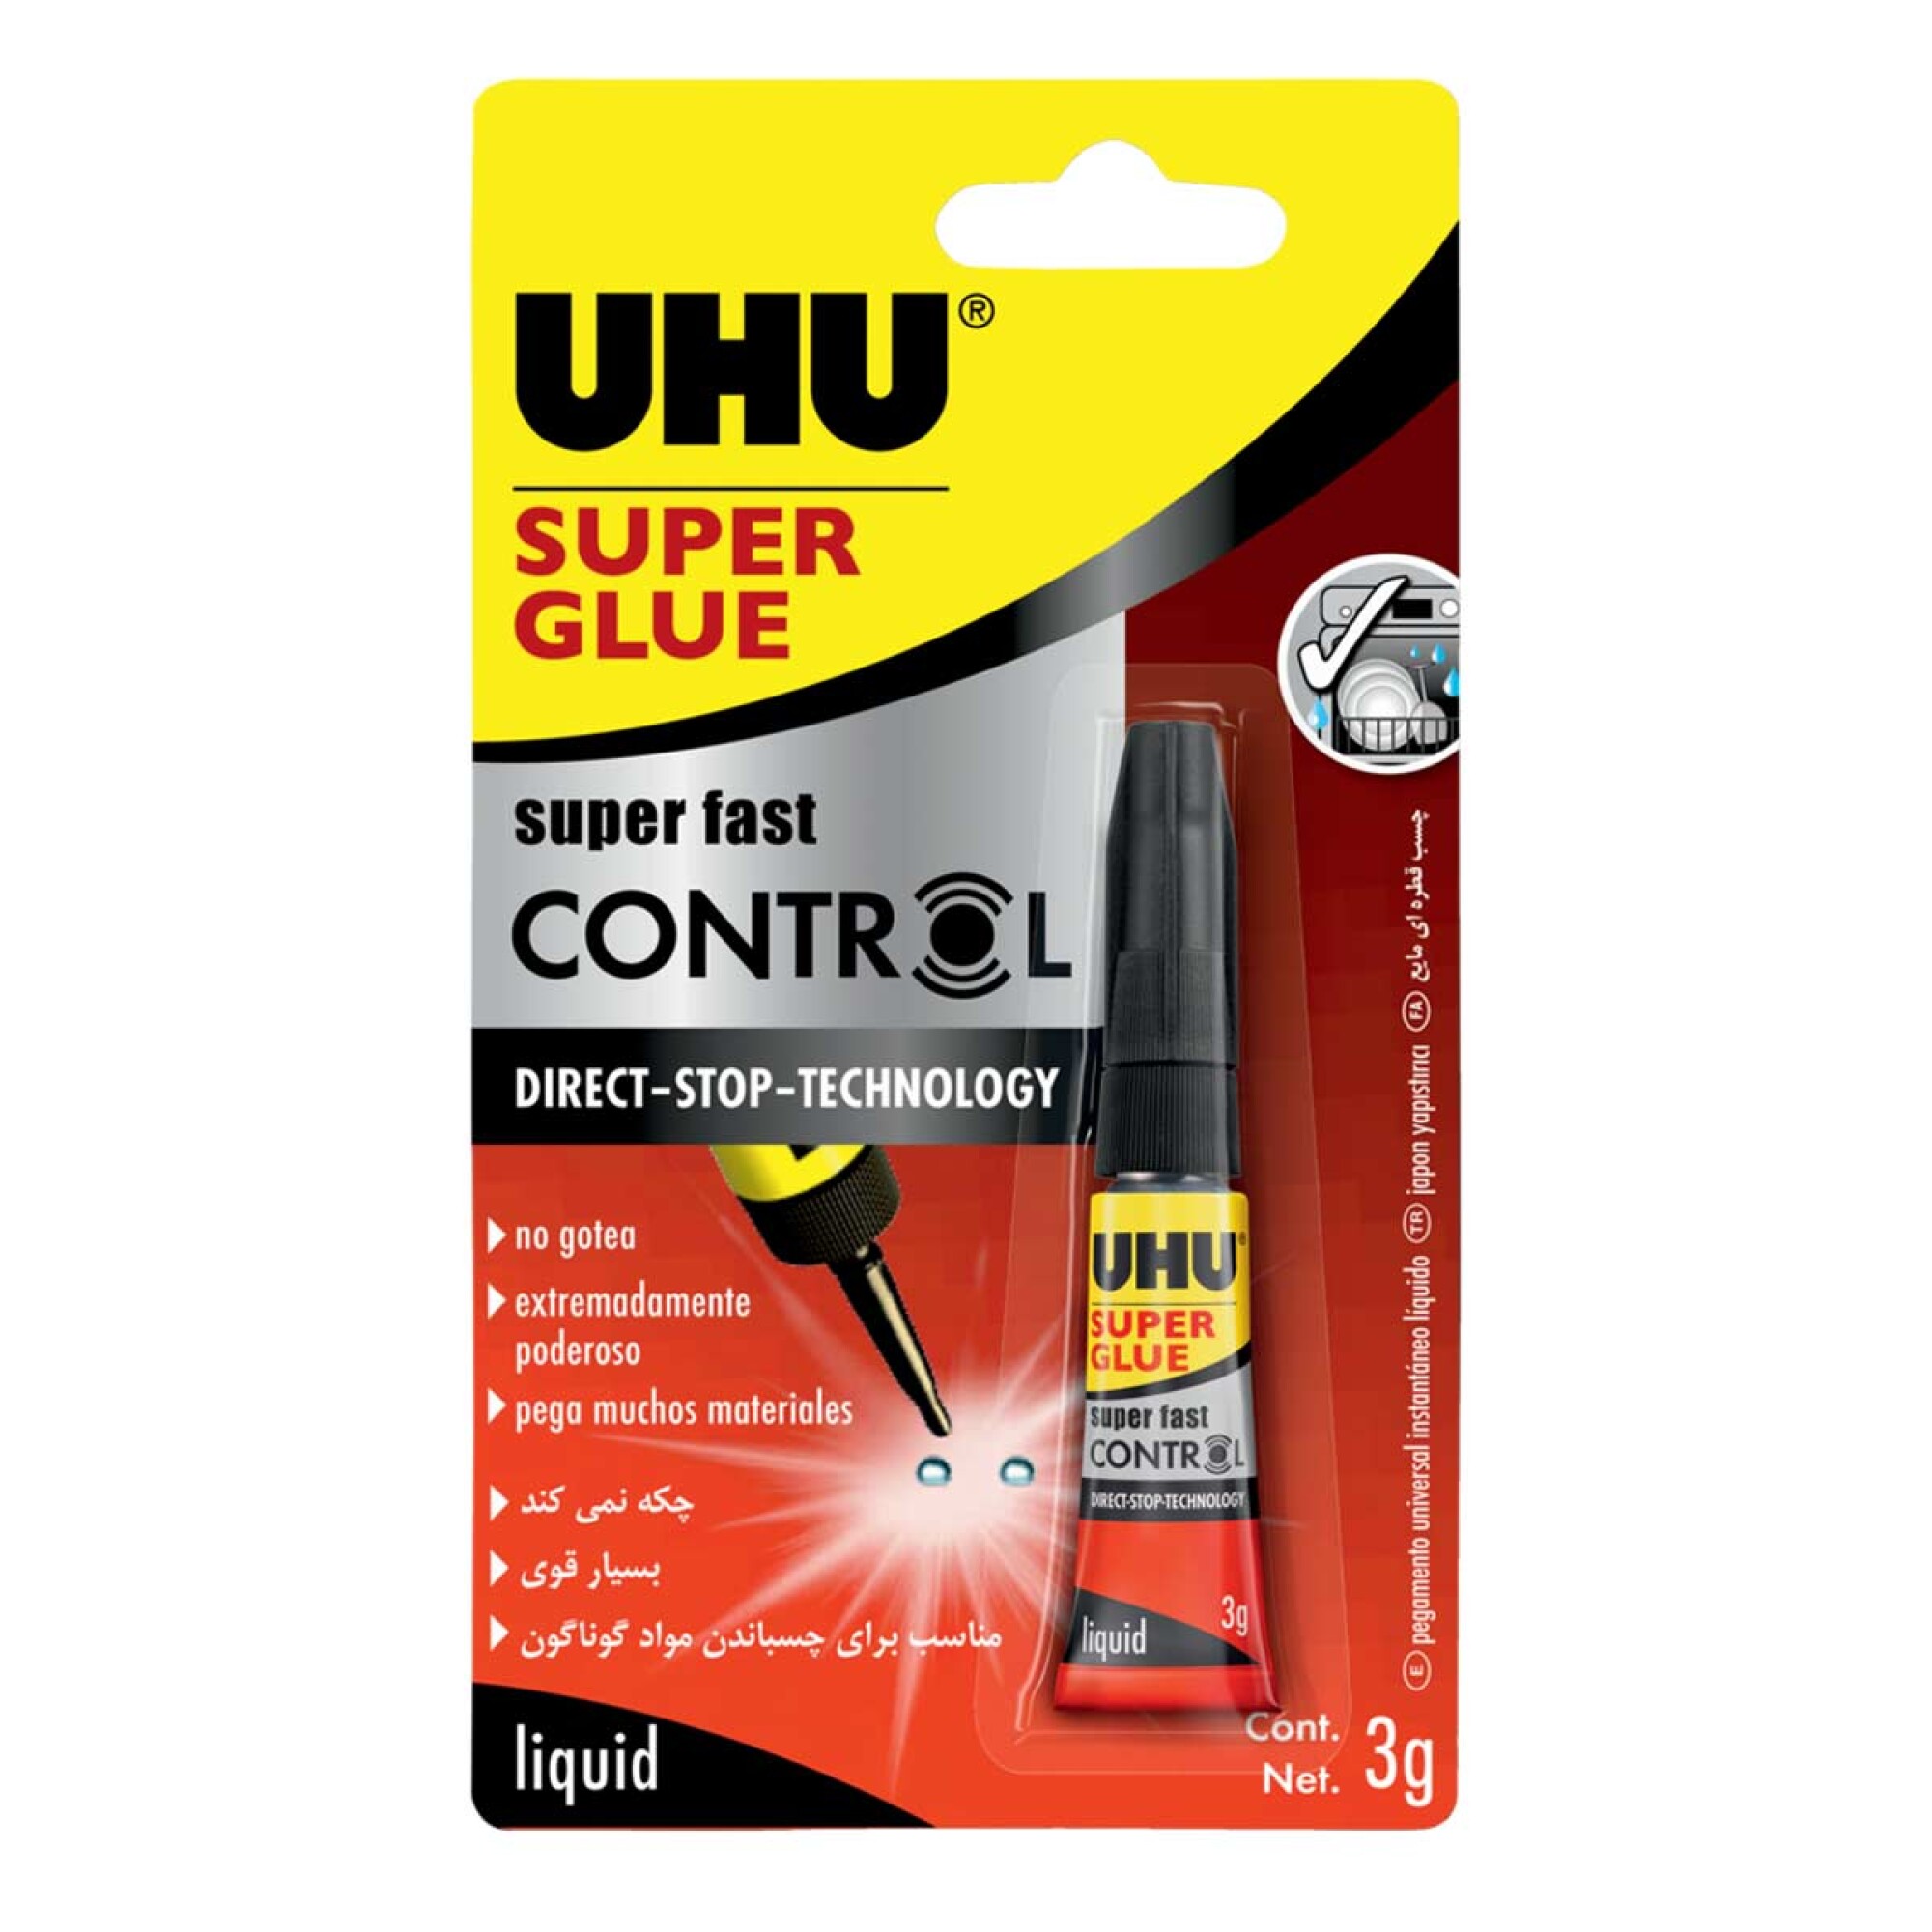 Pegamento instantáneo UHU Súper Glue Control — Infantozzi